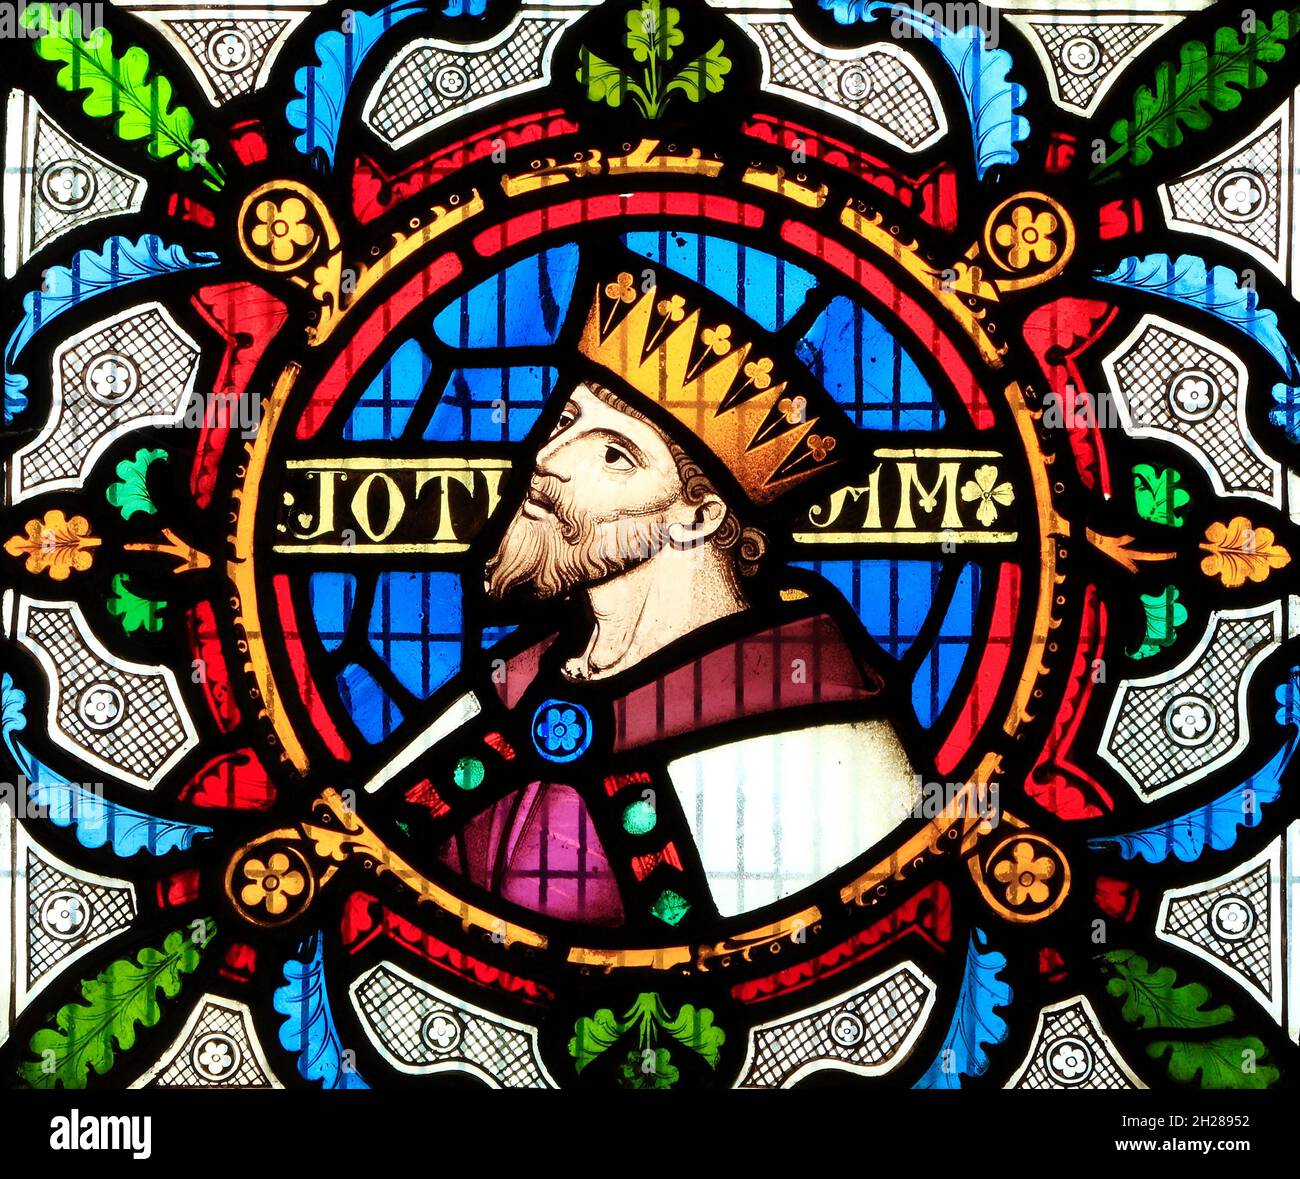 Jotham, roi de Juda, détail de Story of Ruth, vitrail de Robert Bayne de Heaton Butler & Bayne, 1862 ans, Sculthorpe, Norfolk, Angleterre, Royaume-Uni Banque D'Images